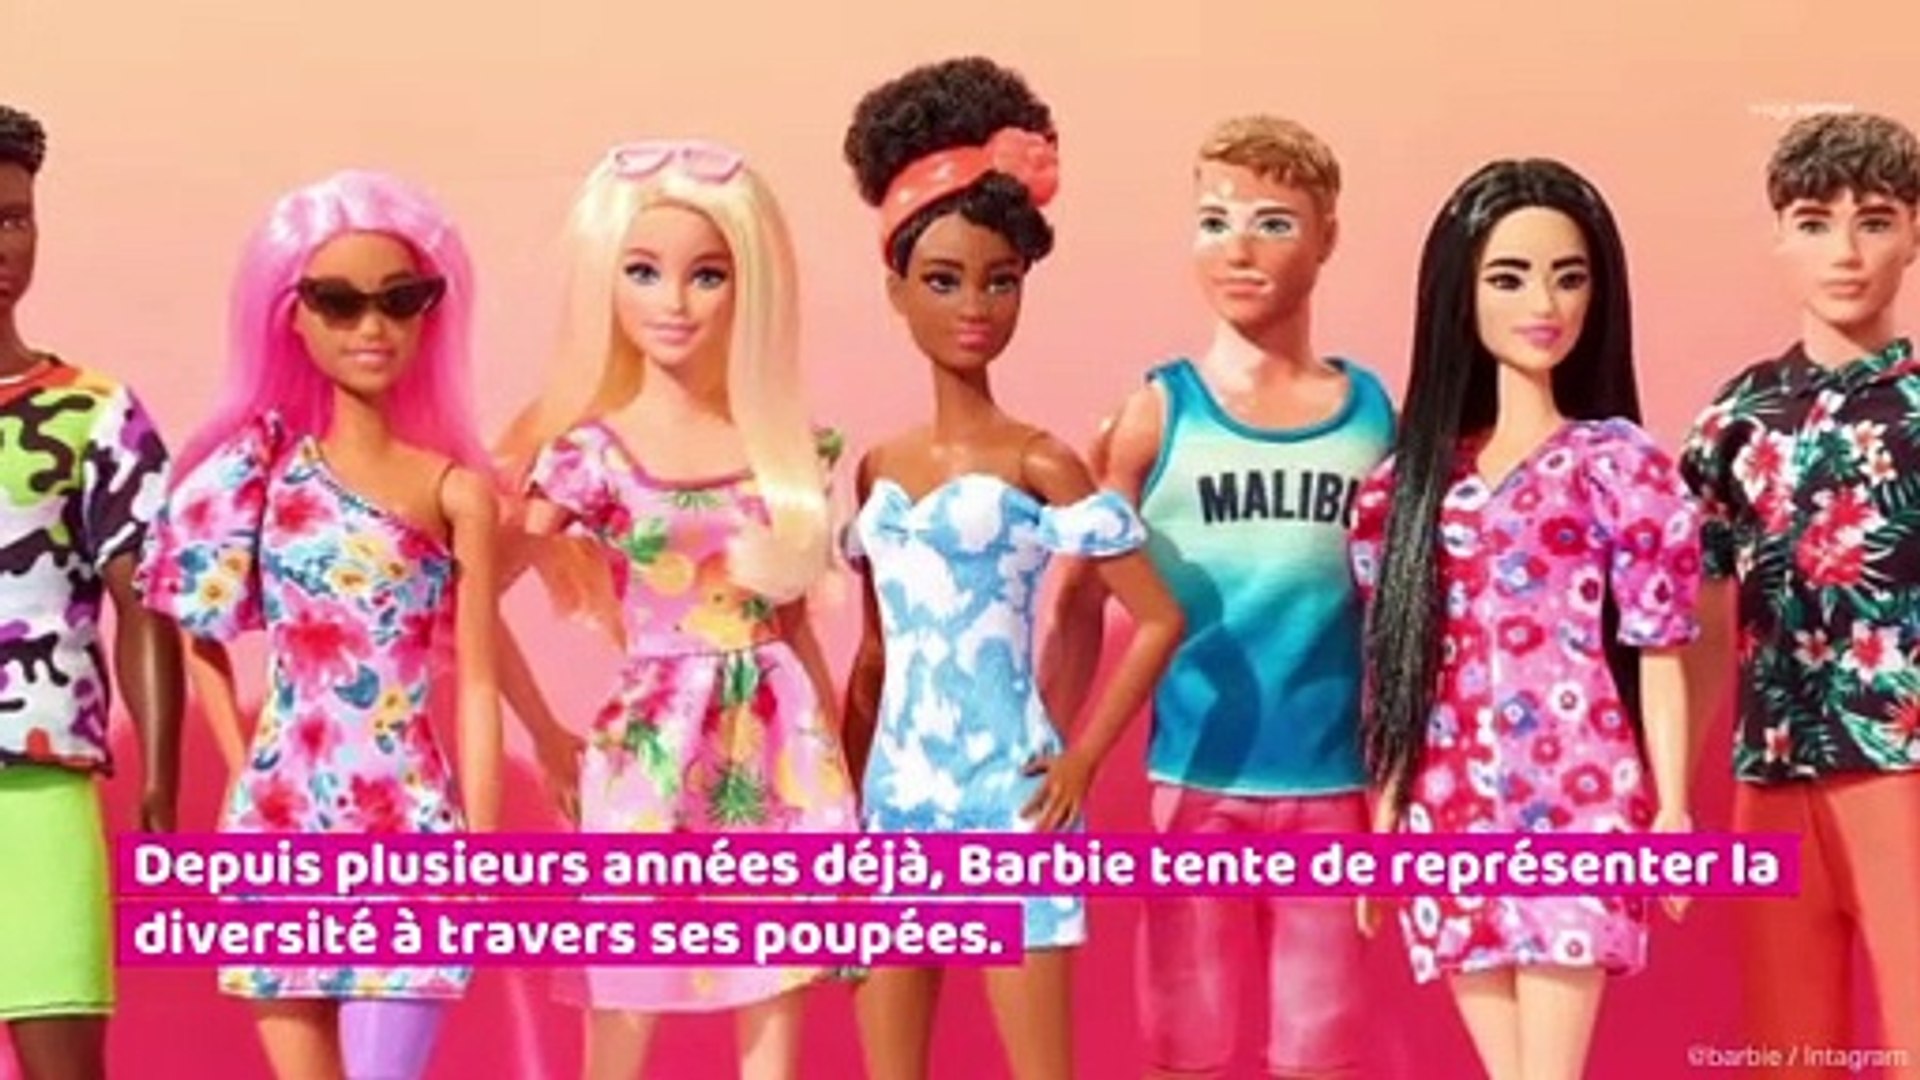 Barbie dévoile deux nouvelles poupées inclusives ! - Vidéo Dailymotion